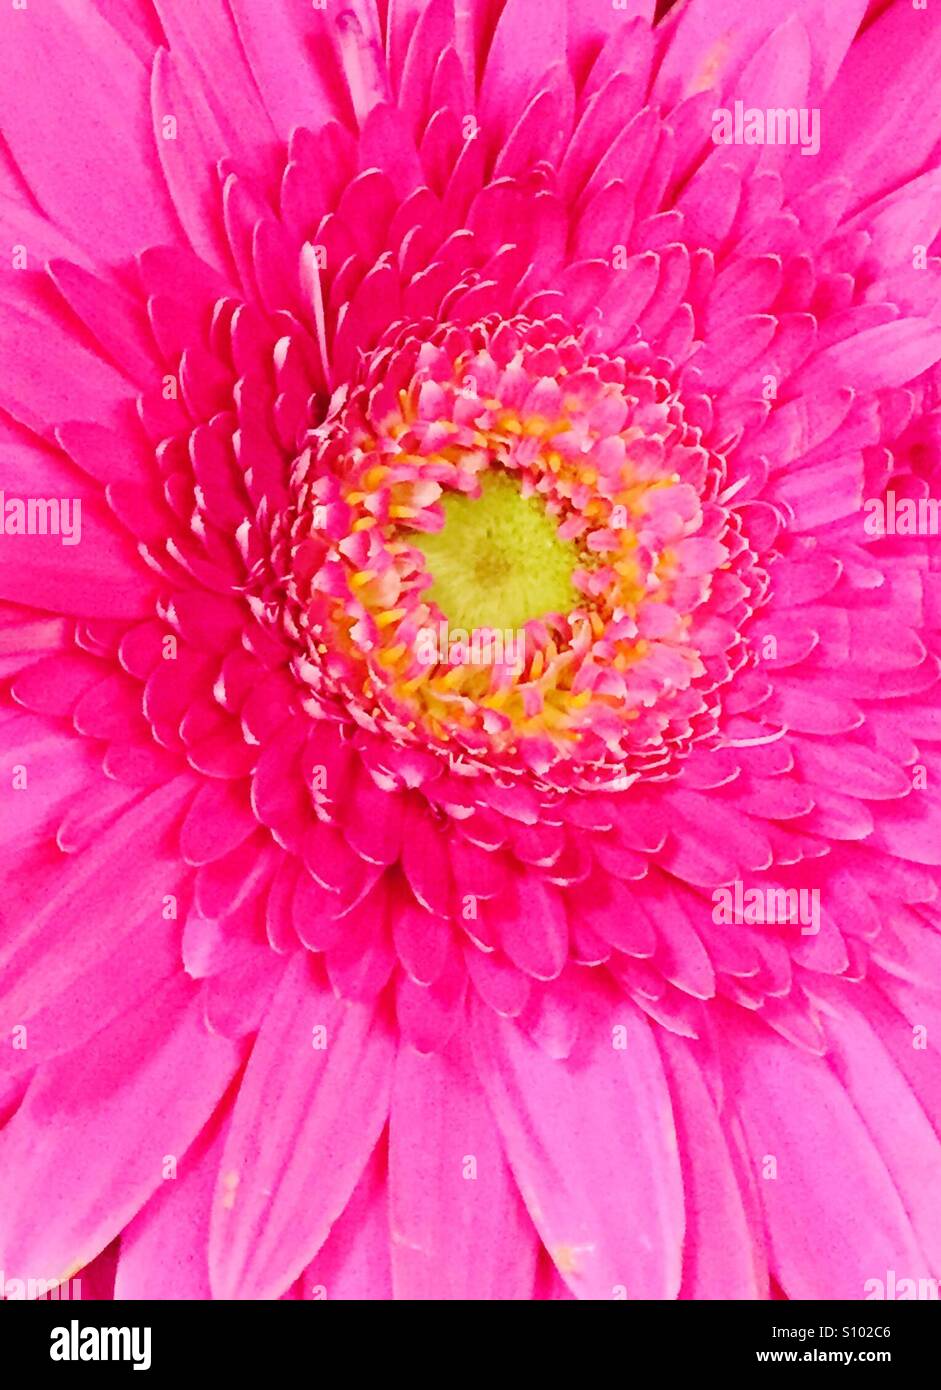 Rosa Blume Chrysantheme Nahaufnahme von rosa Blütenblättern und gelben Staubgefäßen... Stockfoto